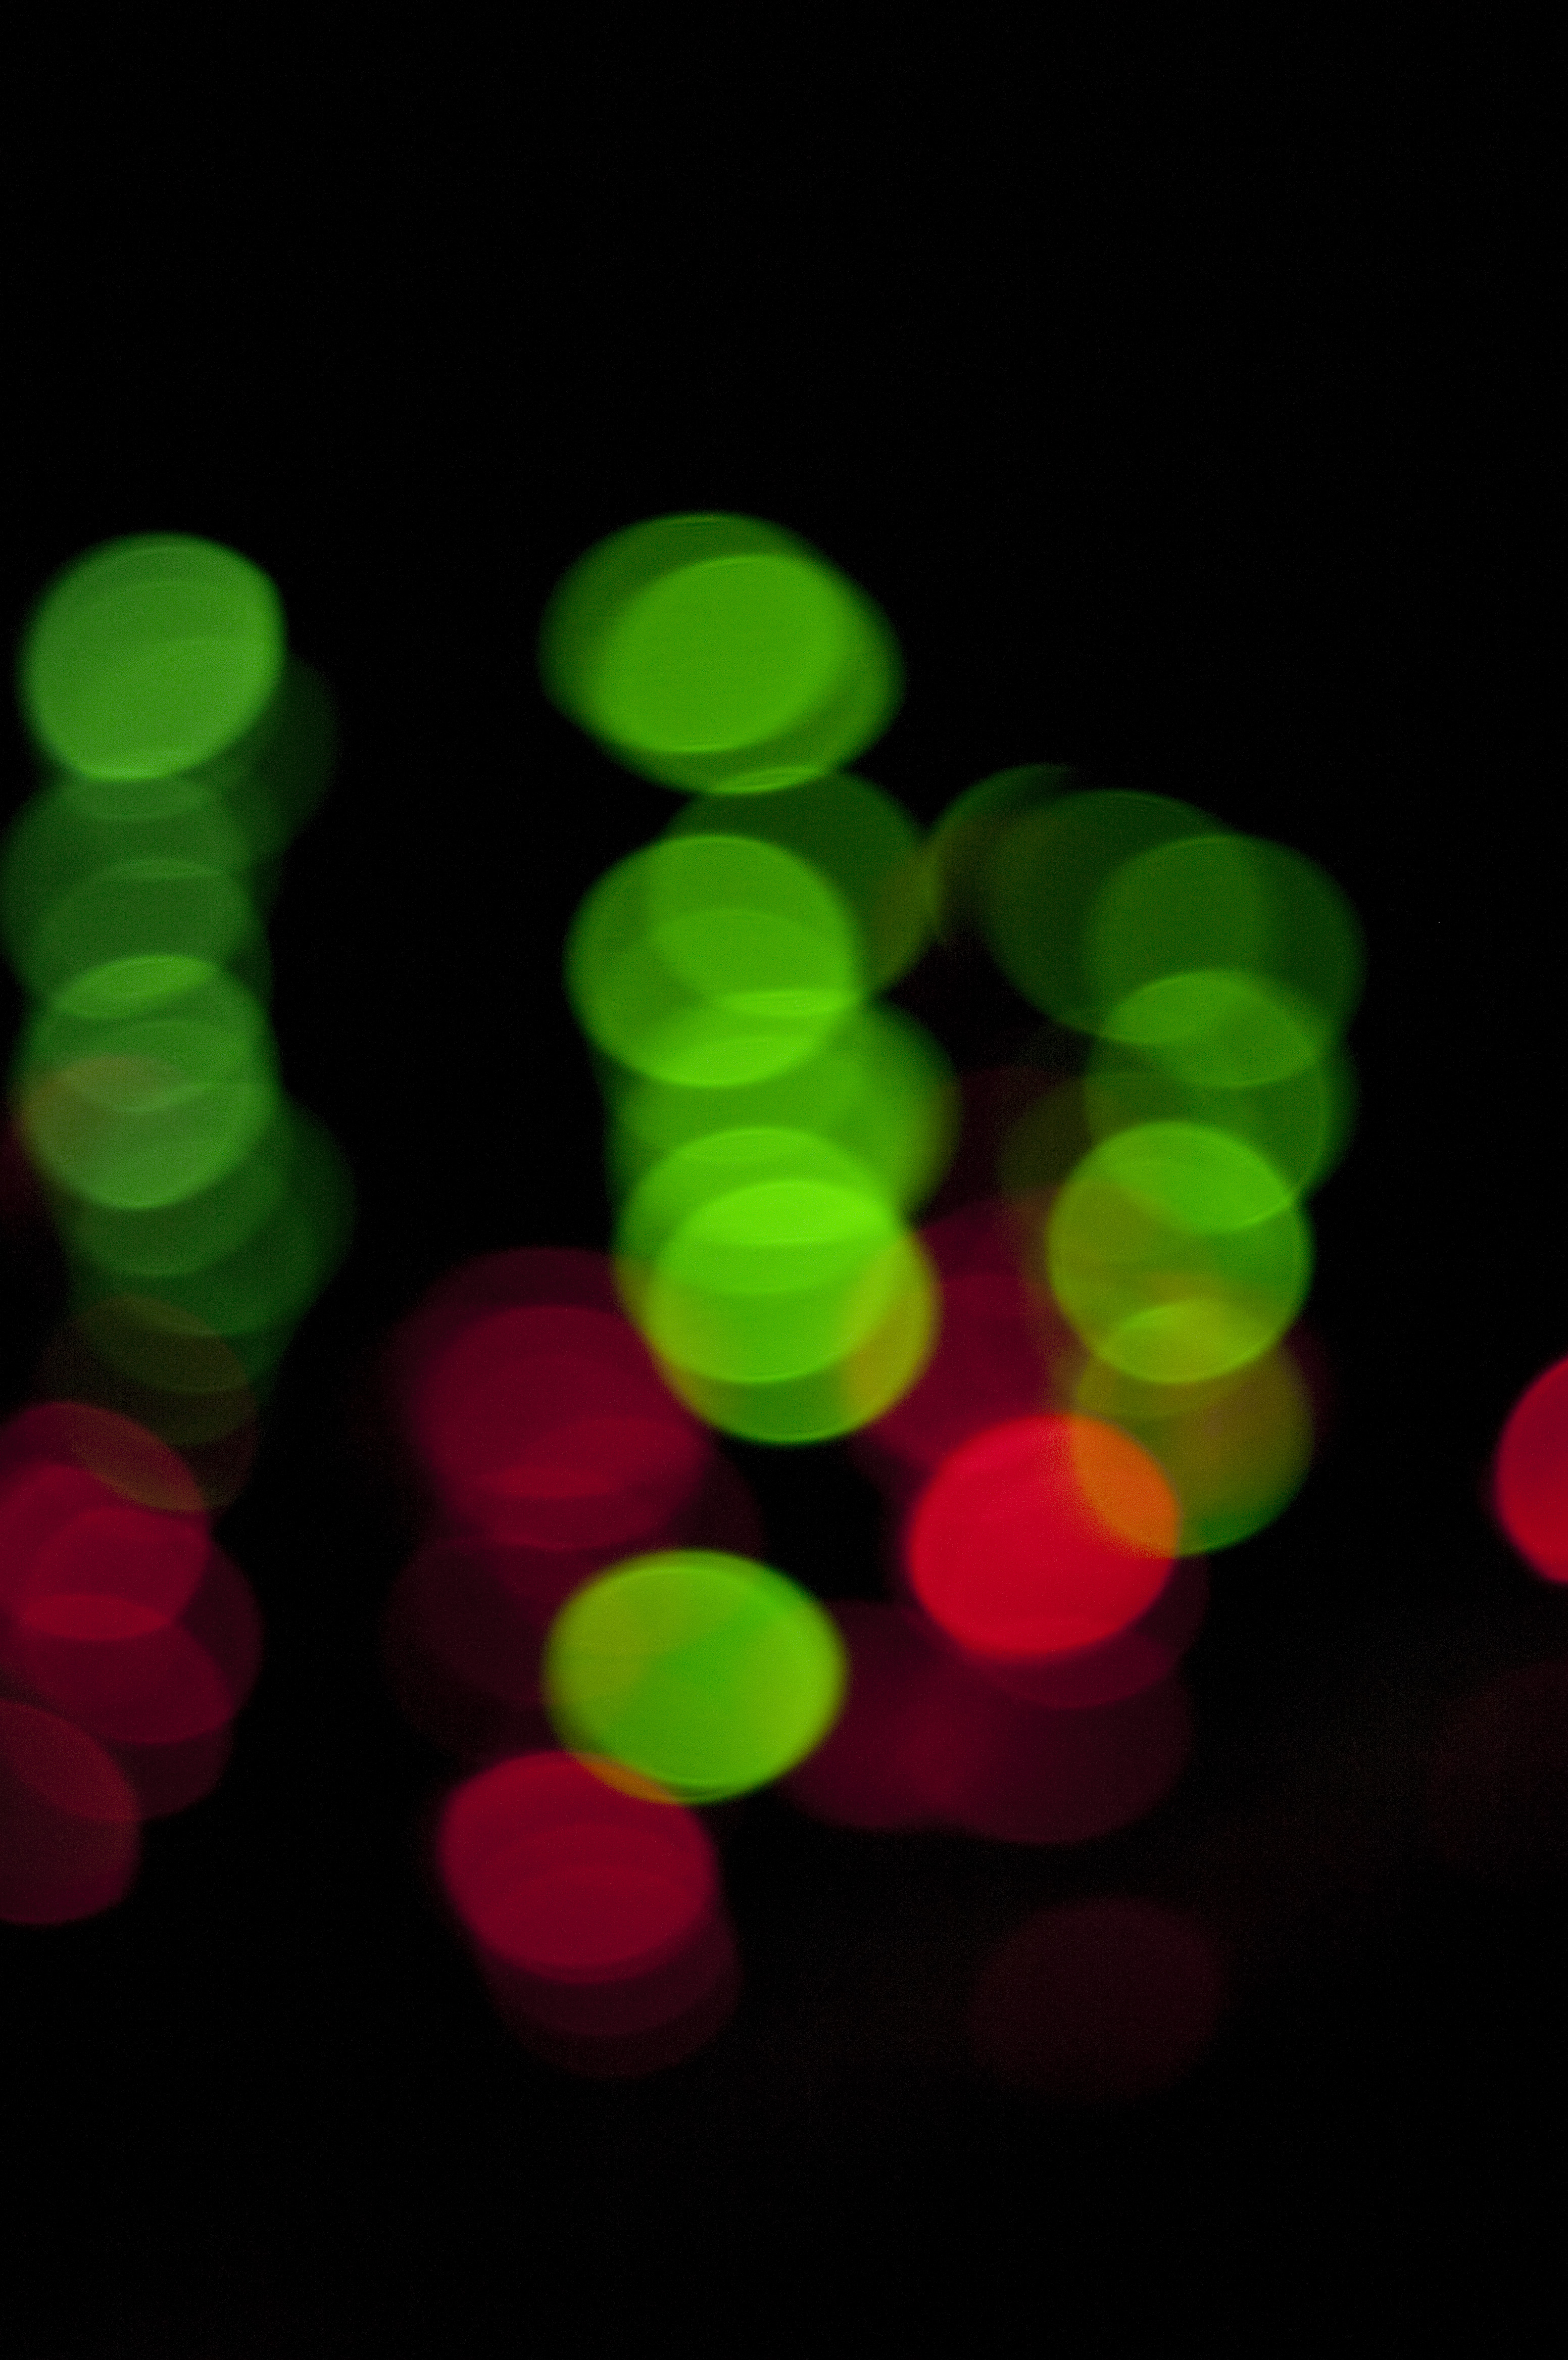 green_red_lights.jpg